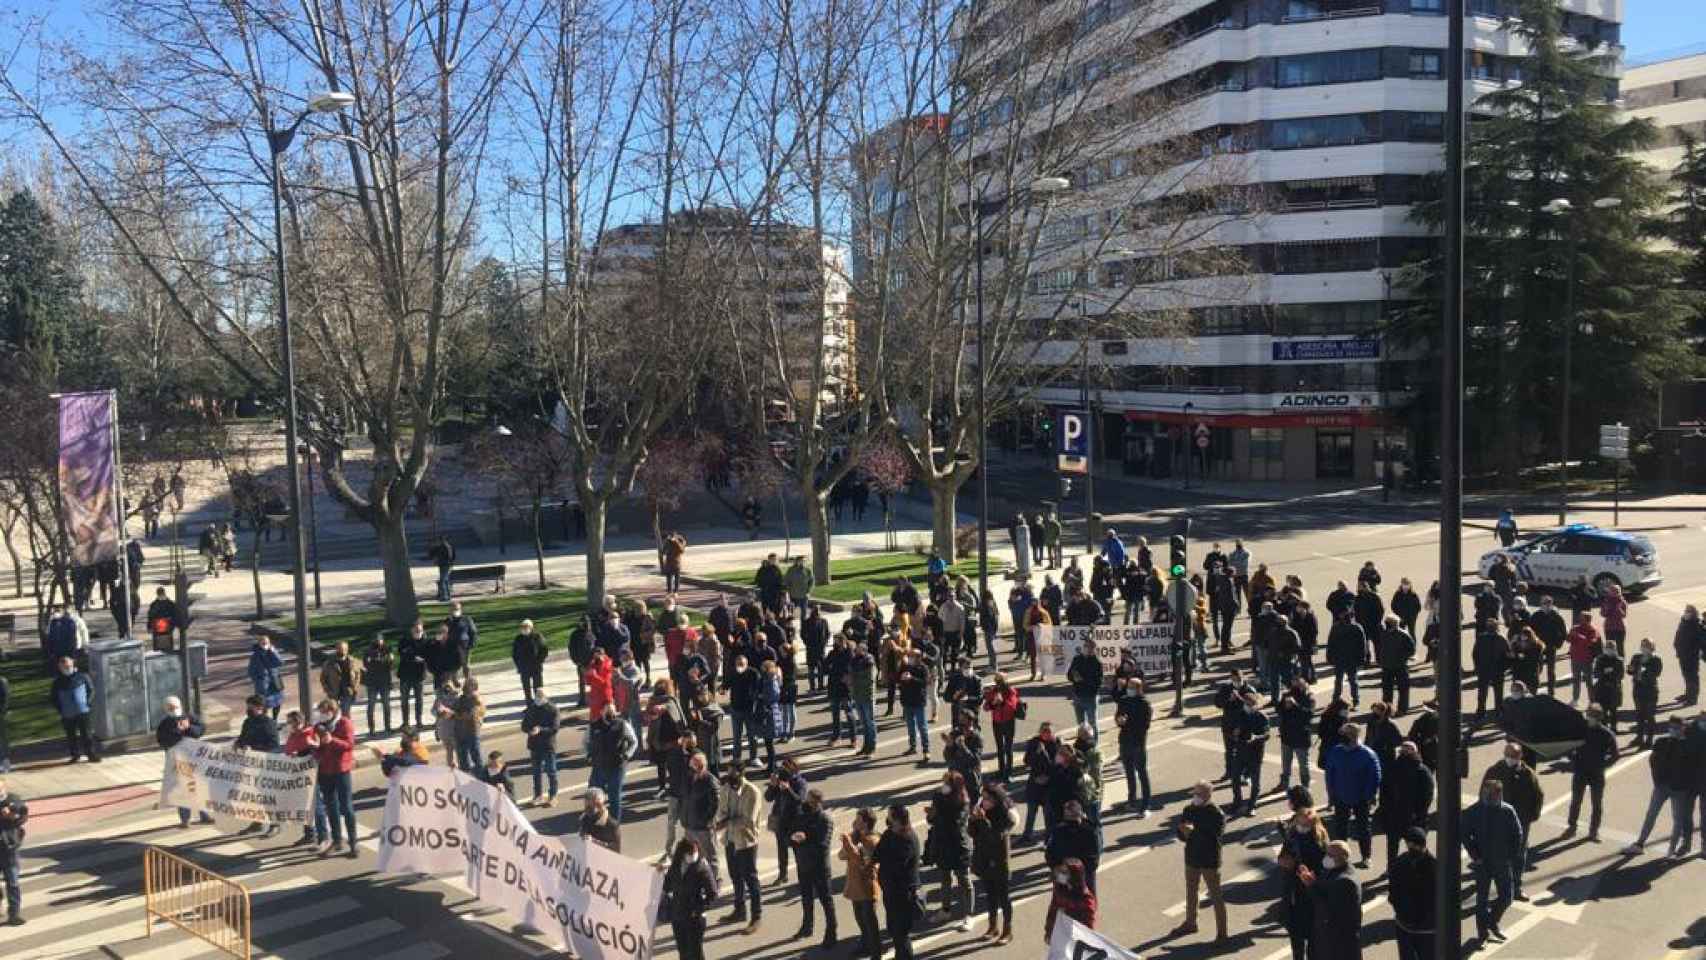 La hostelería de Zamora estalla a 'huevazos' contra la Junta 2